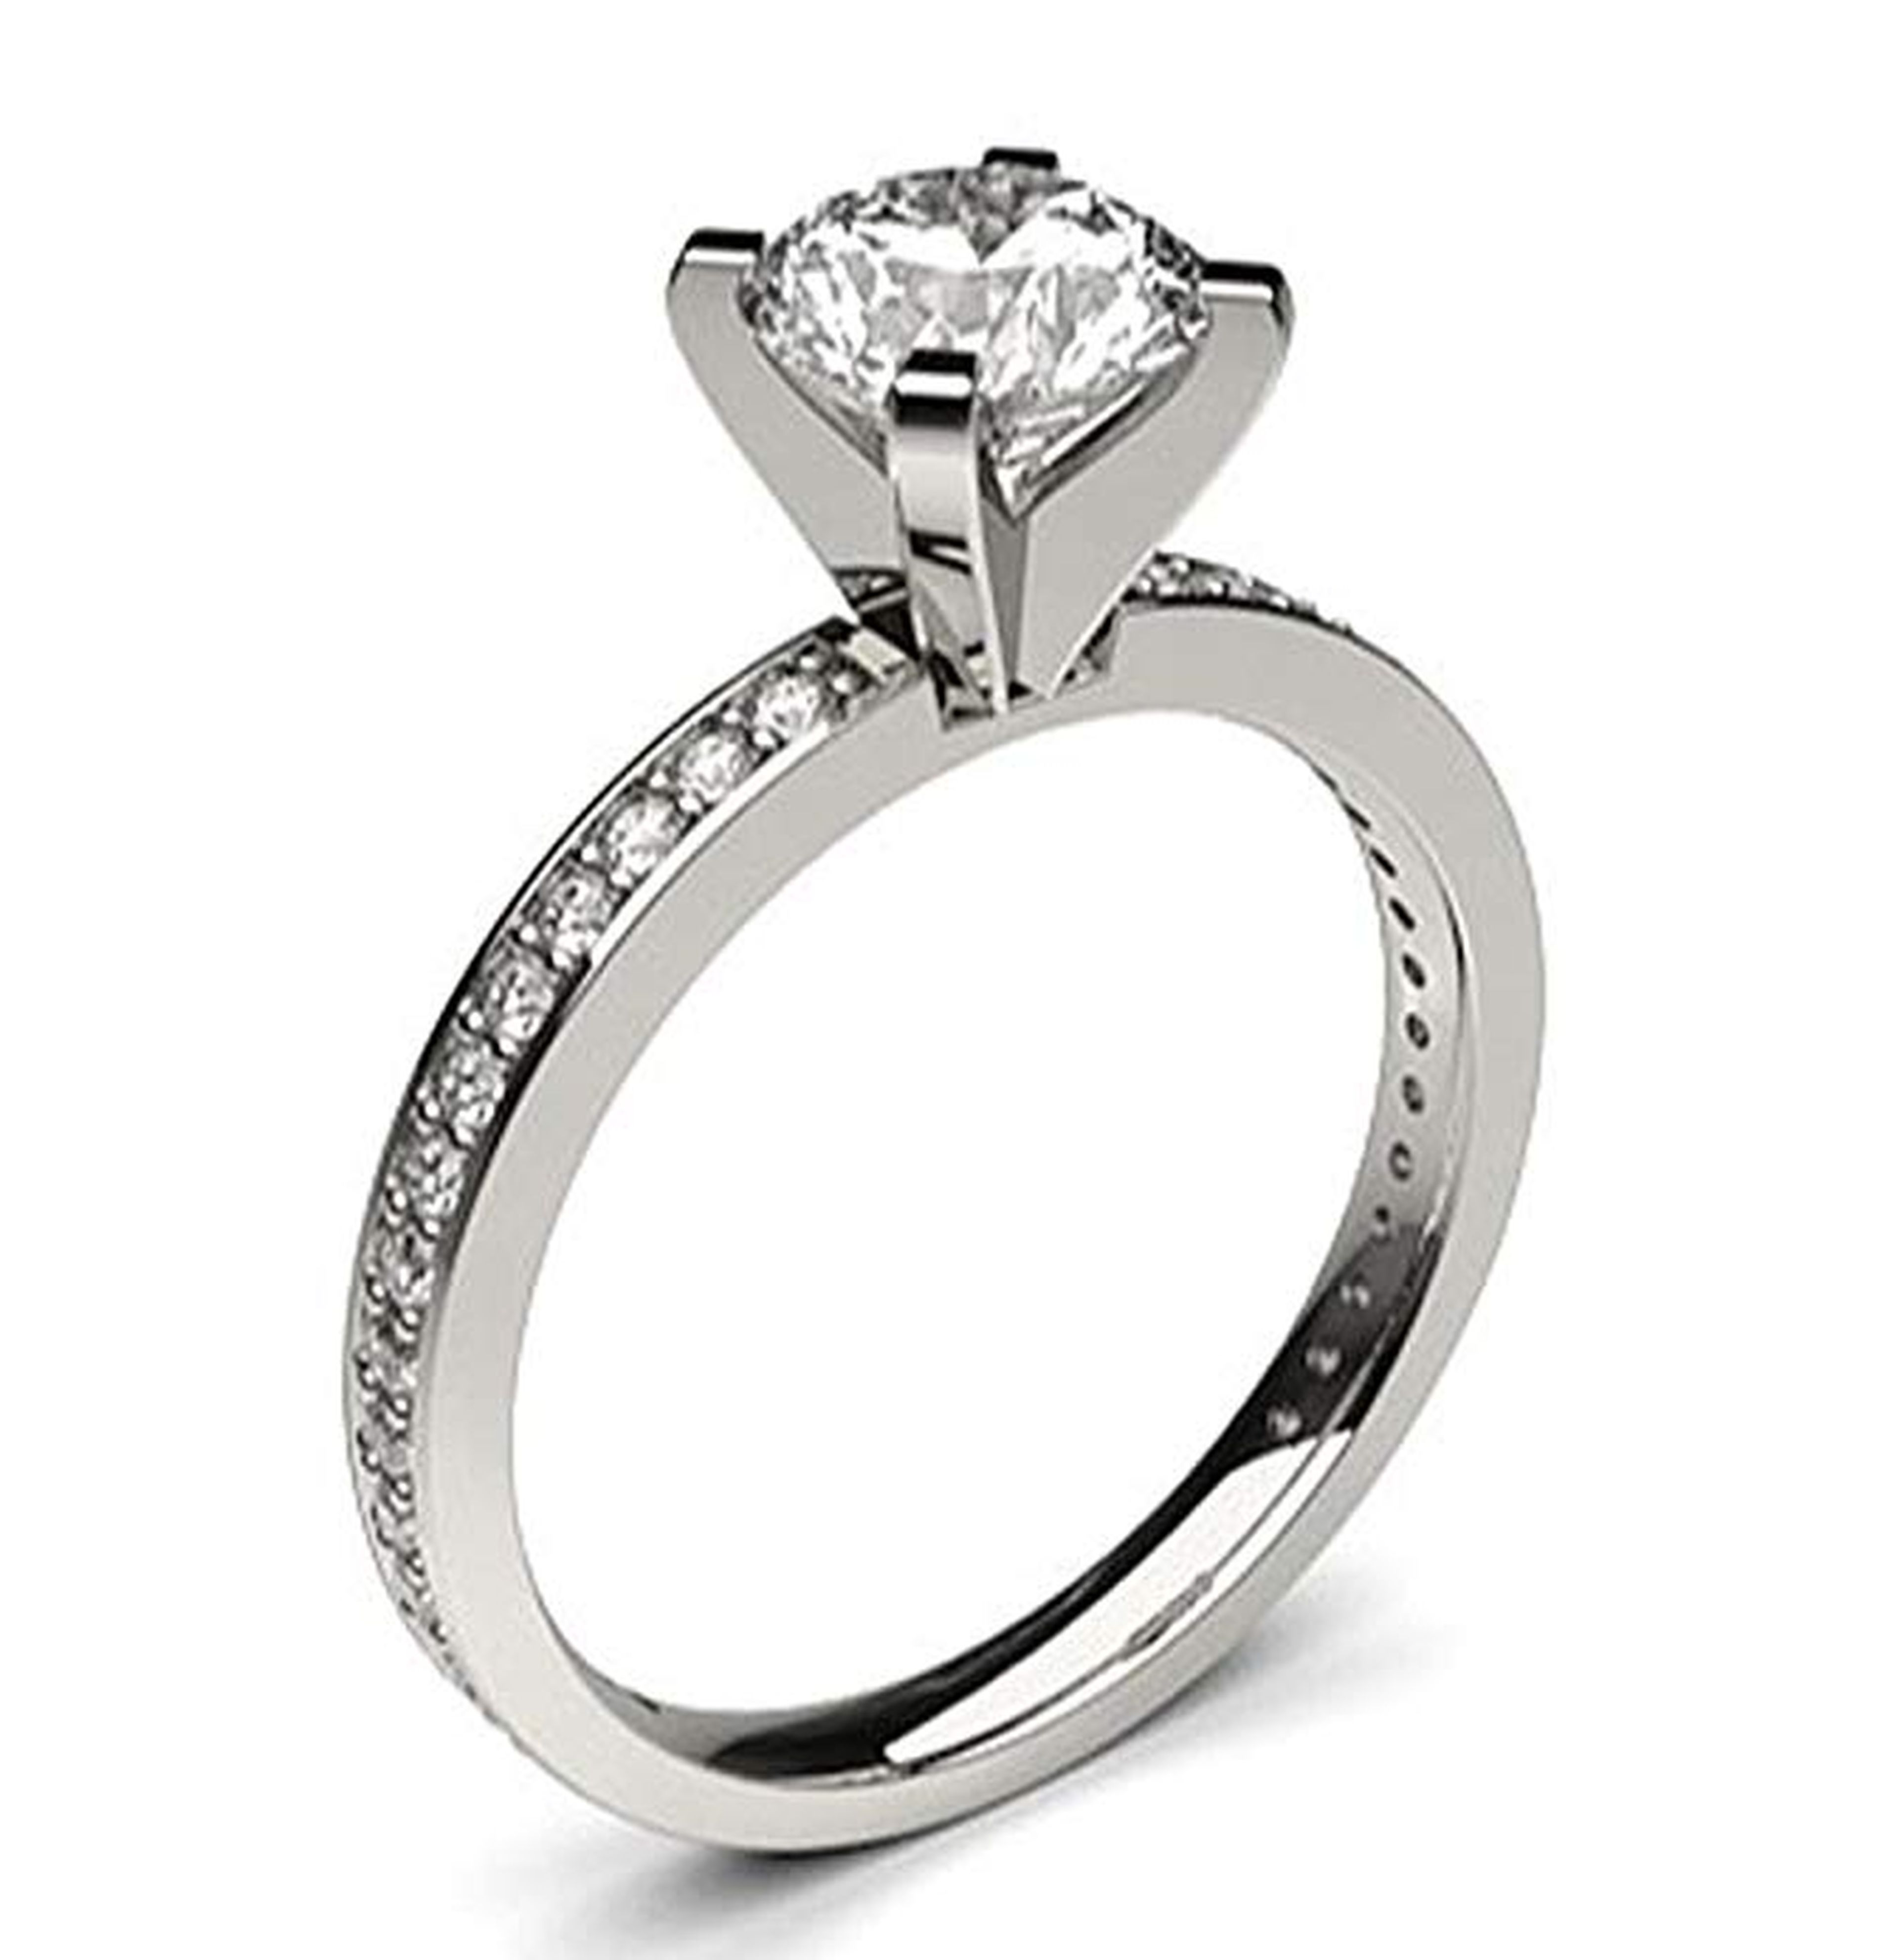 Un anillo de compromiso de oro blanco y diamantes de 18 kilates